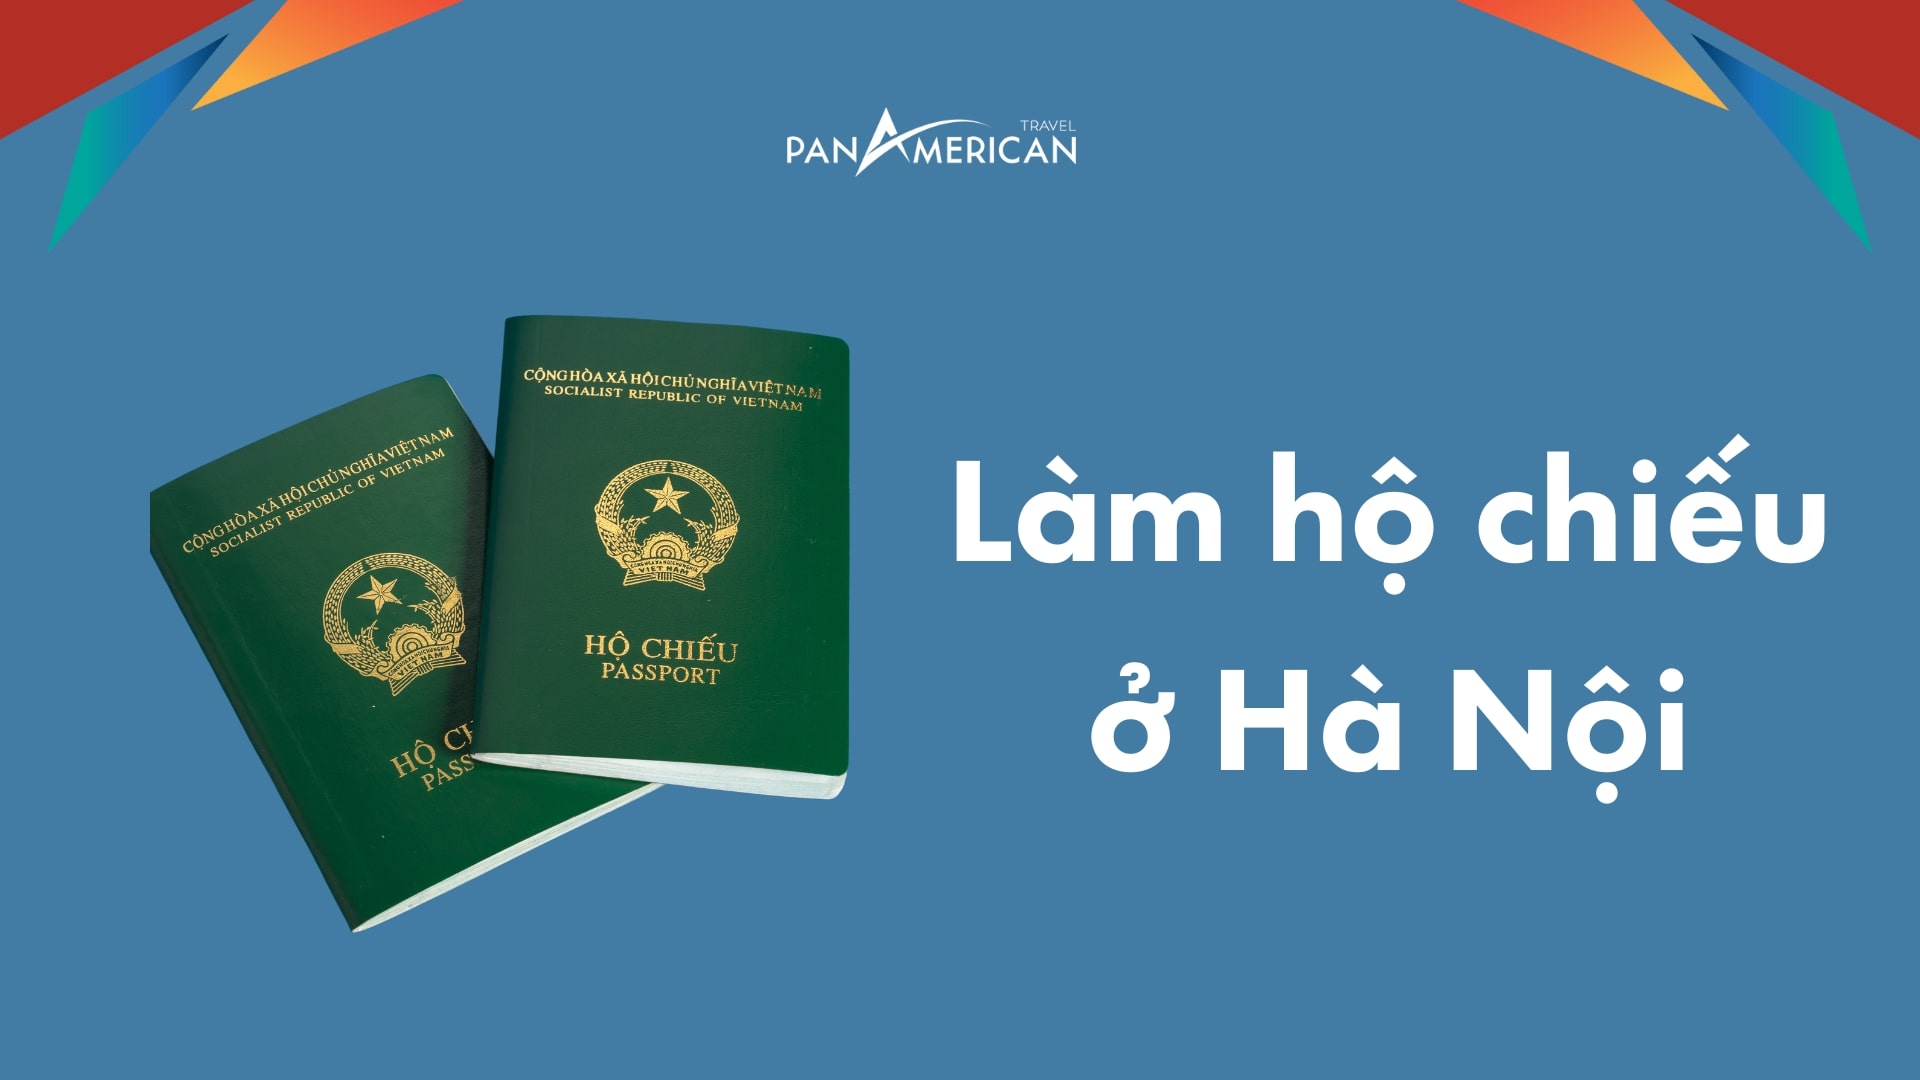 Làm hộ chiếu ở Hà Nội như thế nào? Có thể làm hộ chiếu online được hay không?